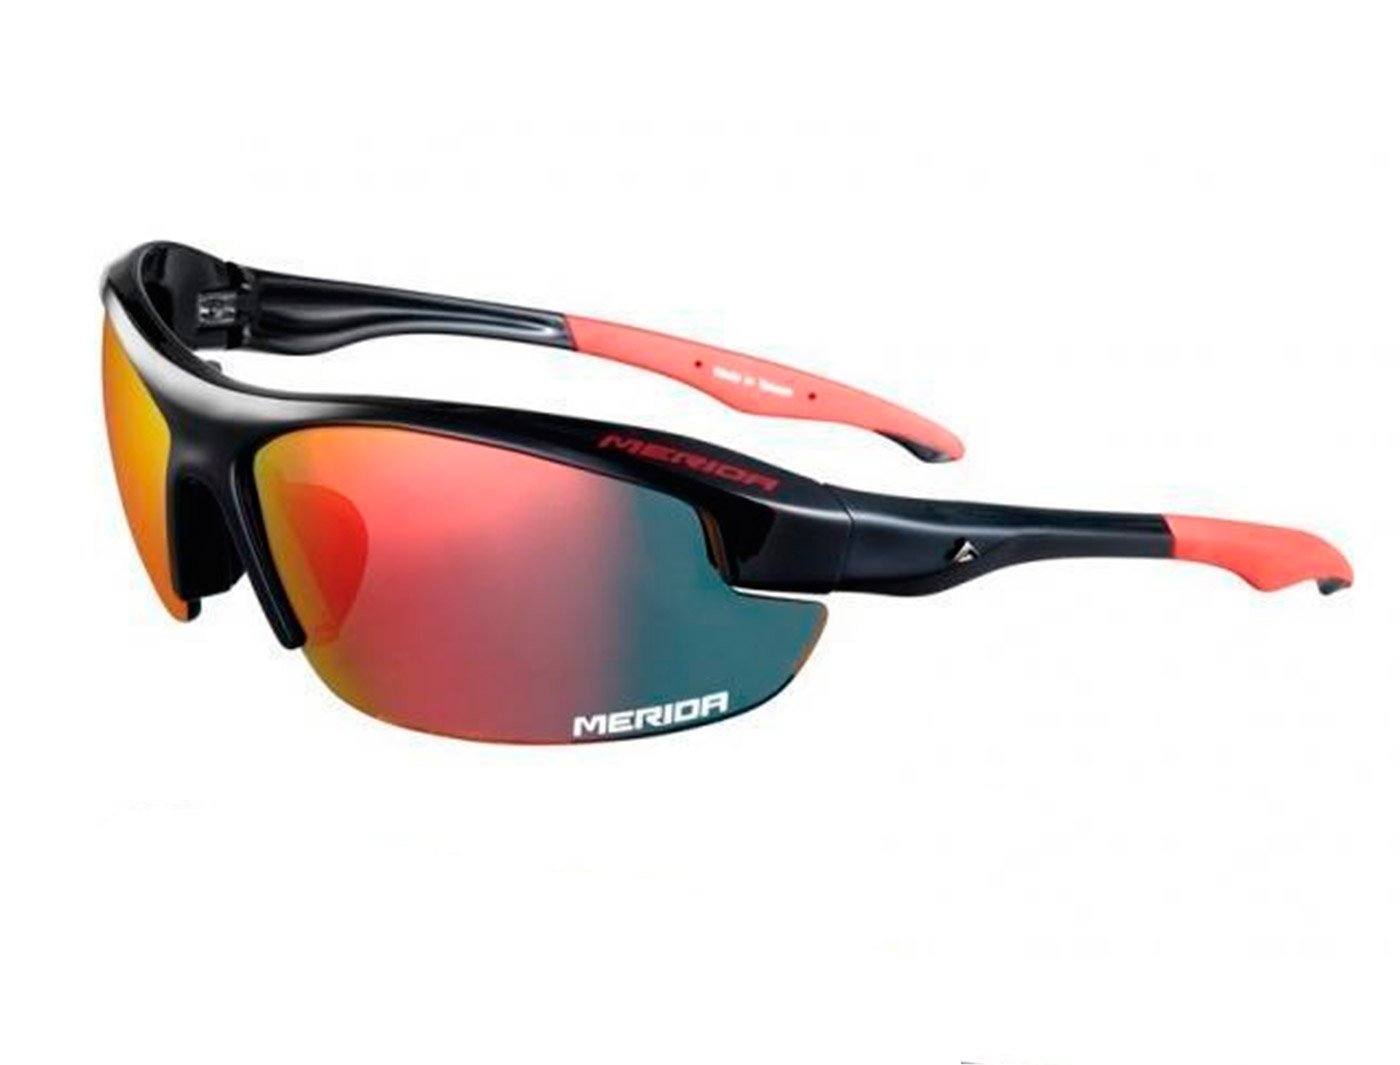 Очки велосипедные, Merida Sport Edition Sunglasses Shiny blackRed, сменные линзы, 2313001088 очки велосипедные author vision lx ударопрочные поликарбонат сменные линзы чехол кейс неоновая оправа 8 9201101